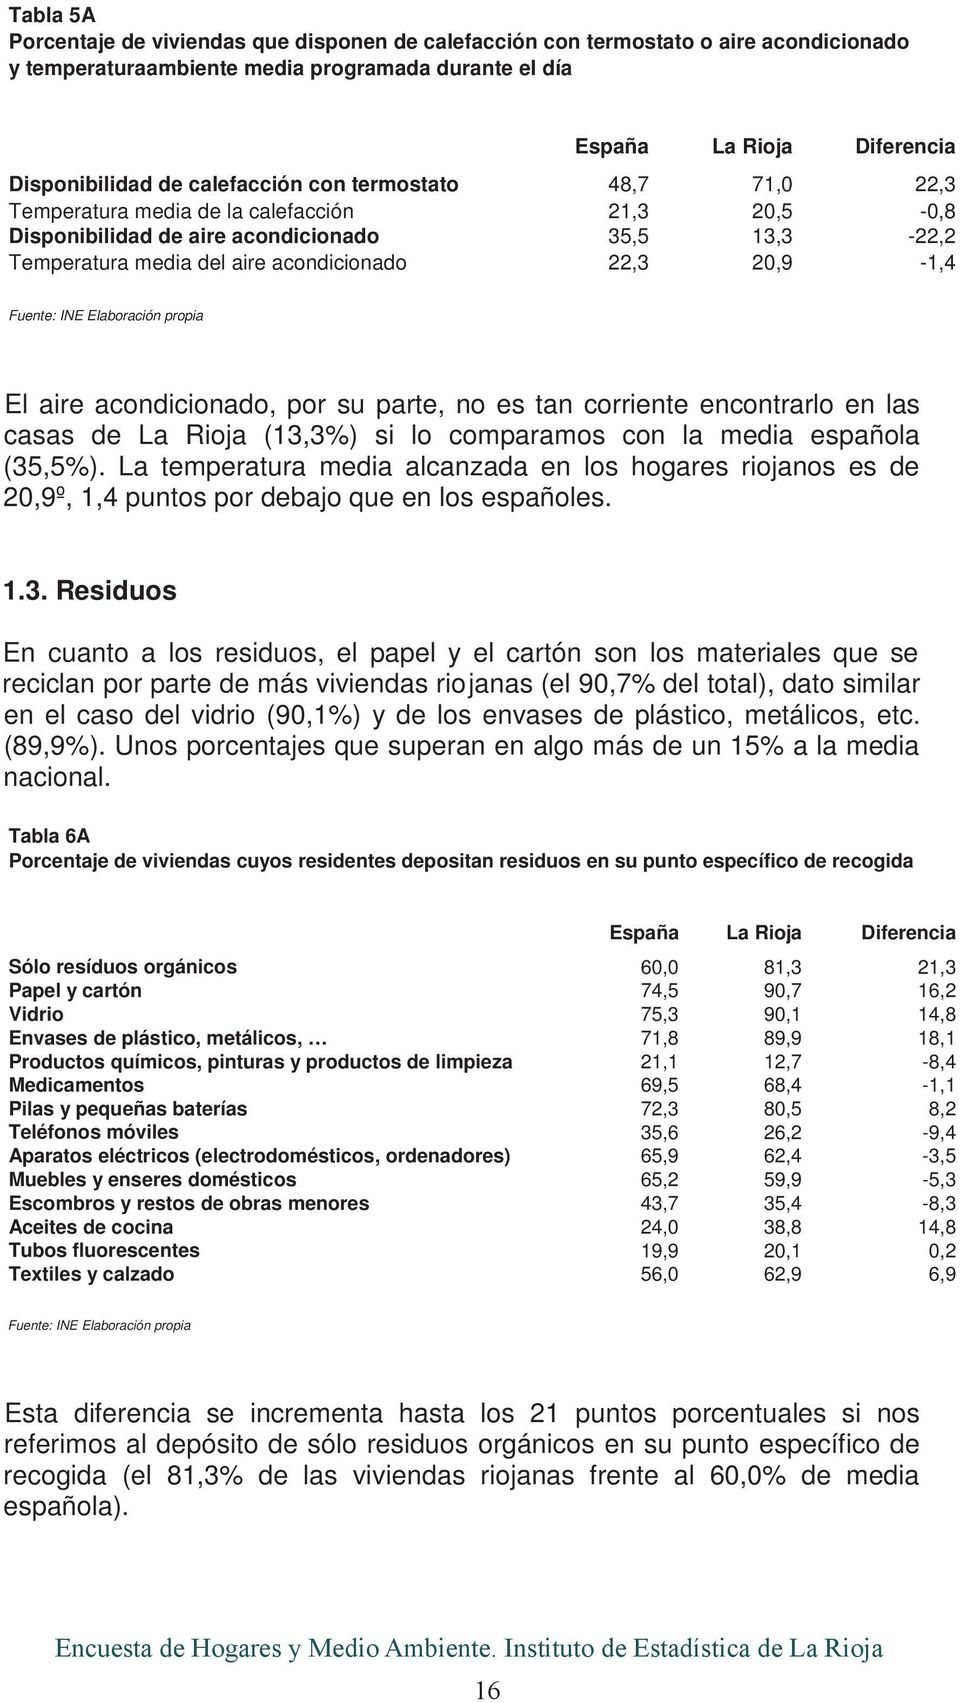 su parte, no es tan corriente encontrarlo en las casas de (13,3%) si lo comparamos con la media española (35,5%).